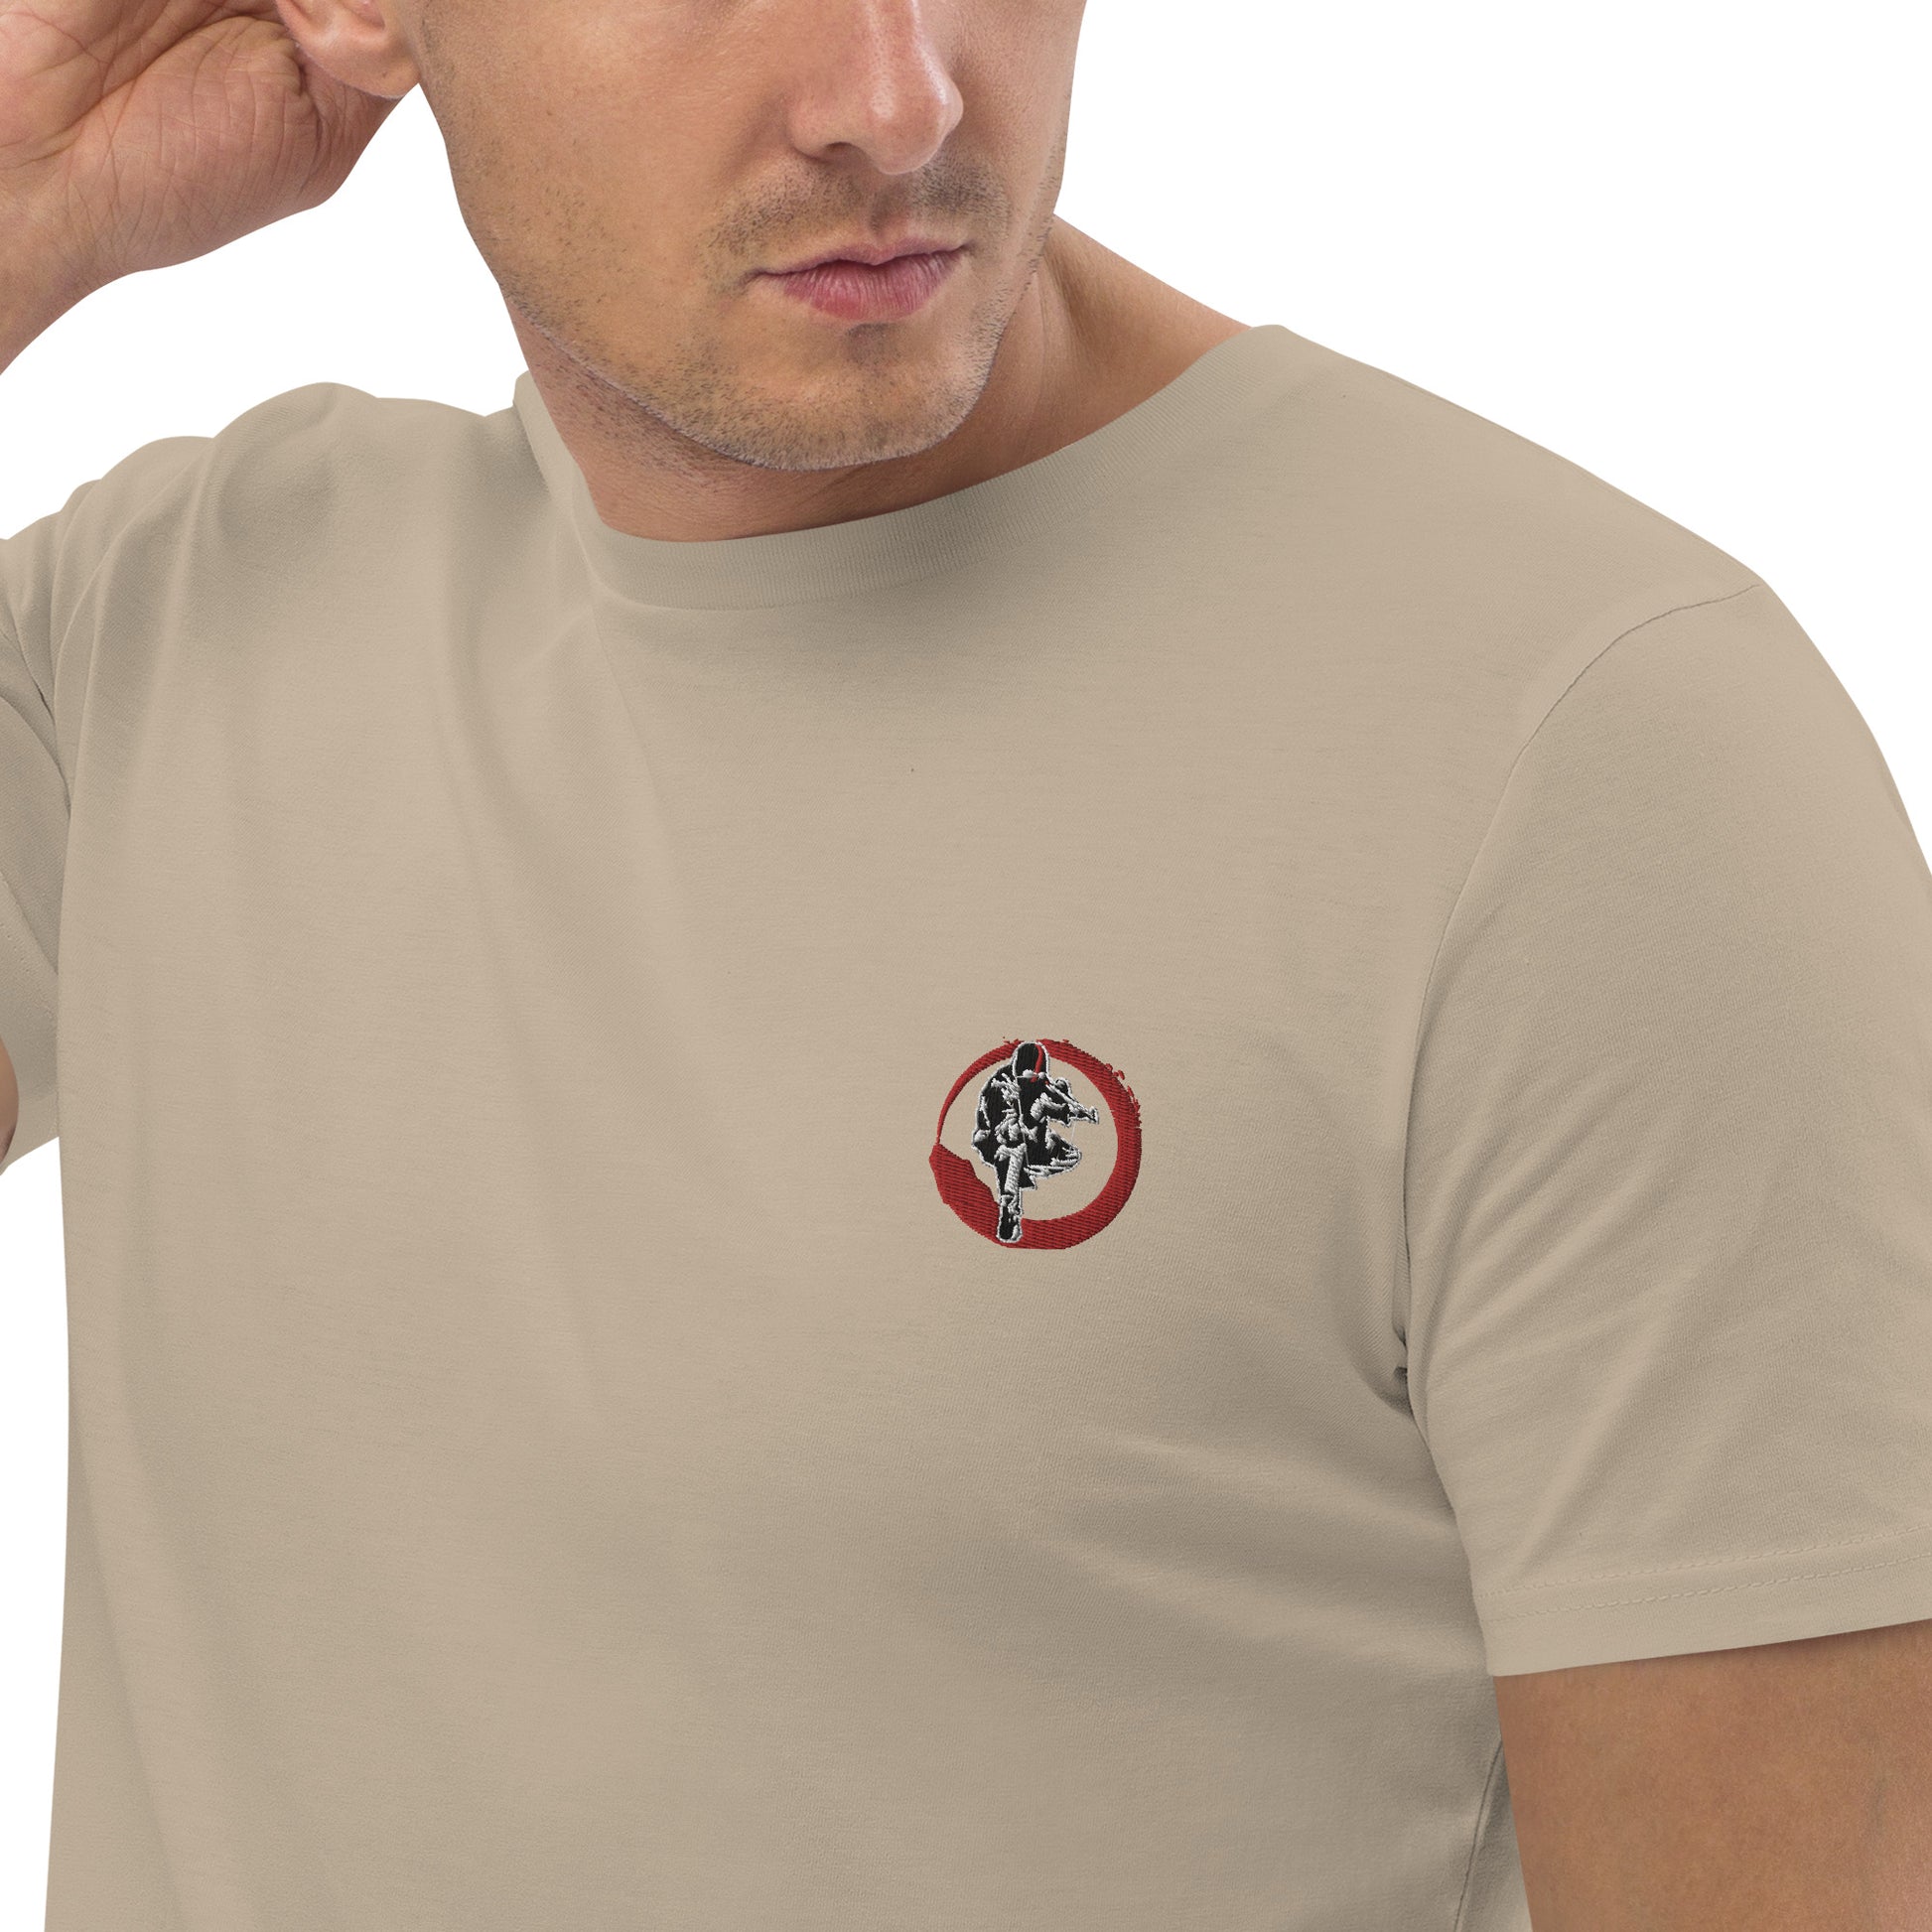 T-shirt unisexe en coton bio Ribellu Contour Rouge - Ochju Ochju Desert Dust / S Ochju T-shirt unisexe en coton bio Ribellu Contour Rouge